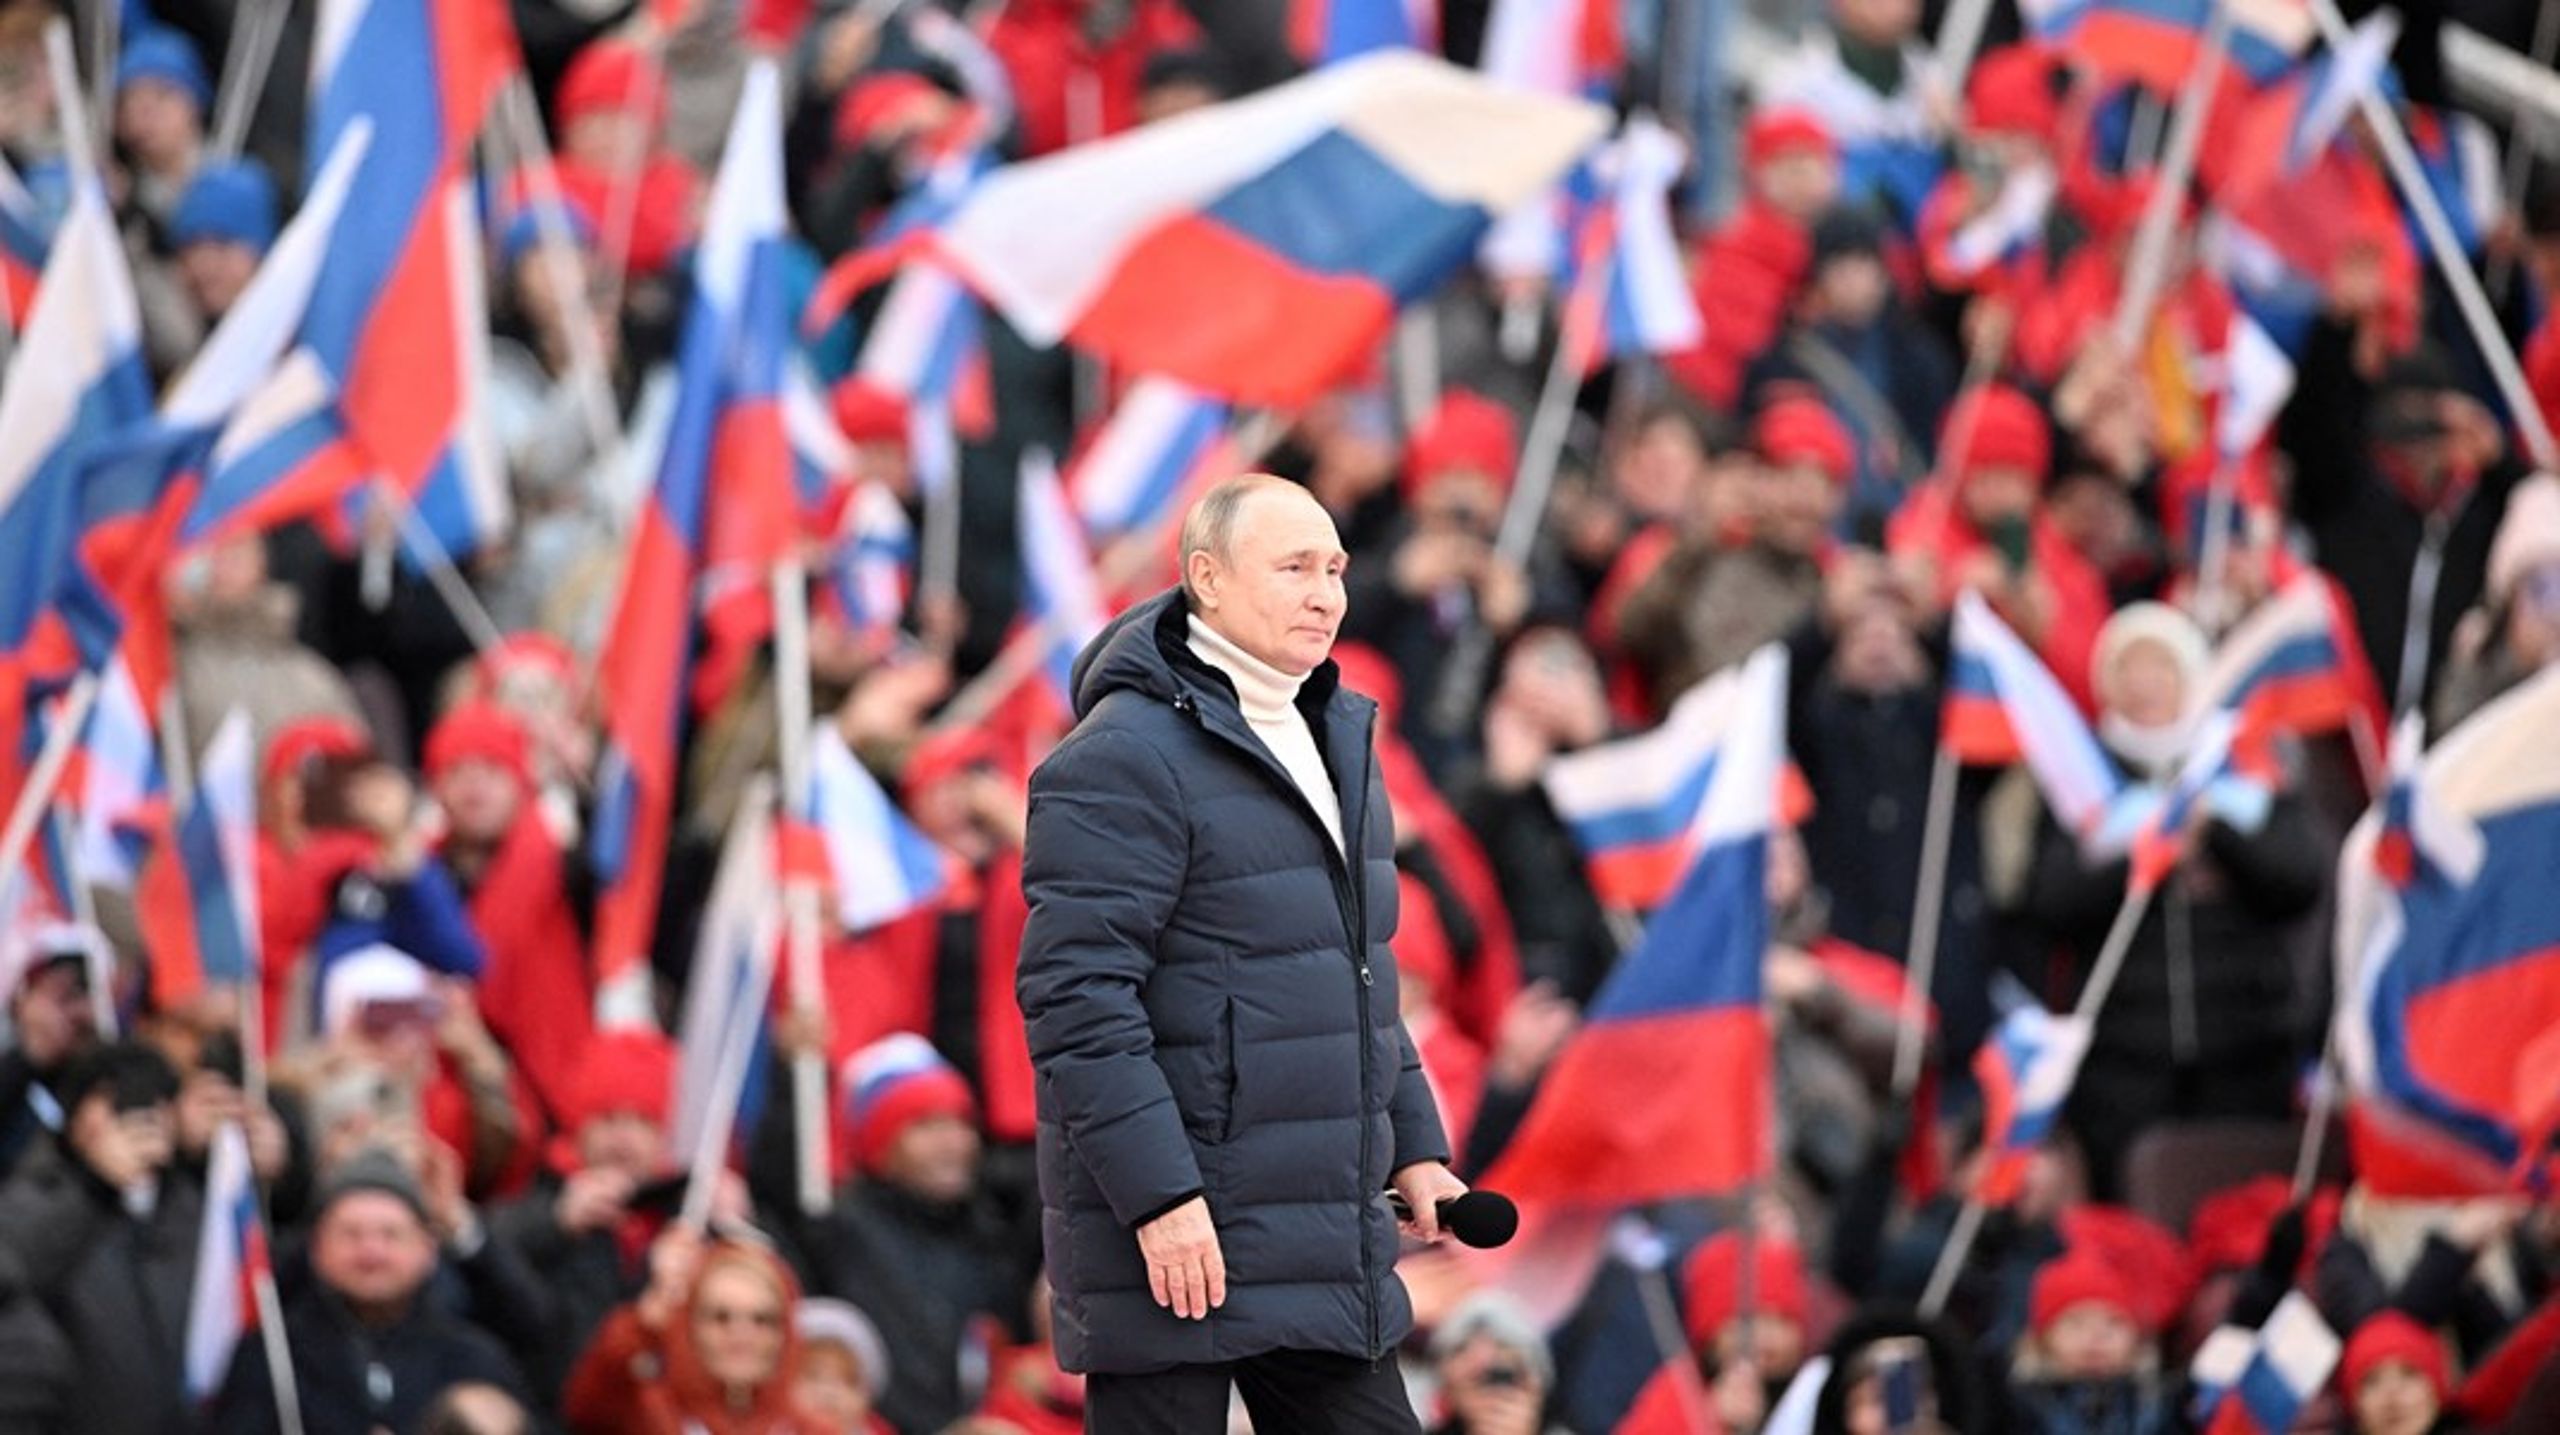 Forfatternes balancerede og velargumenterede åbne position tenderer med andre ord mod at underspille det irrationelle og selvdestruktive ved Putins Rusland, skriver Mette Skak.